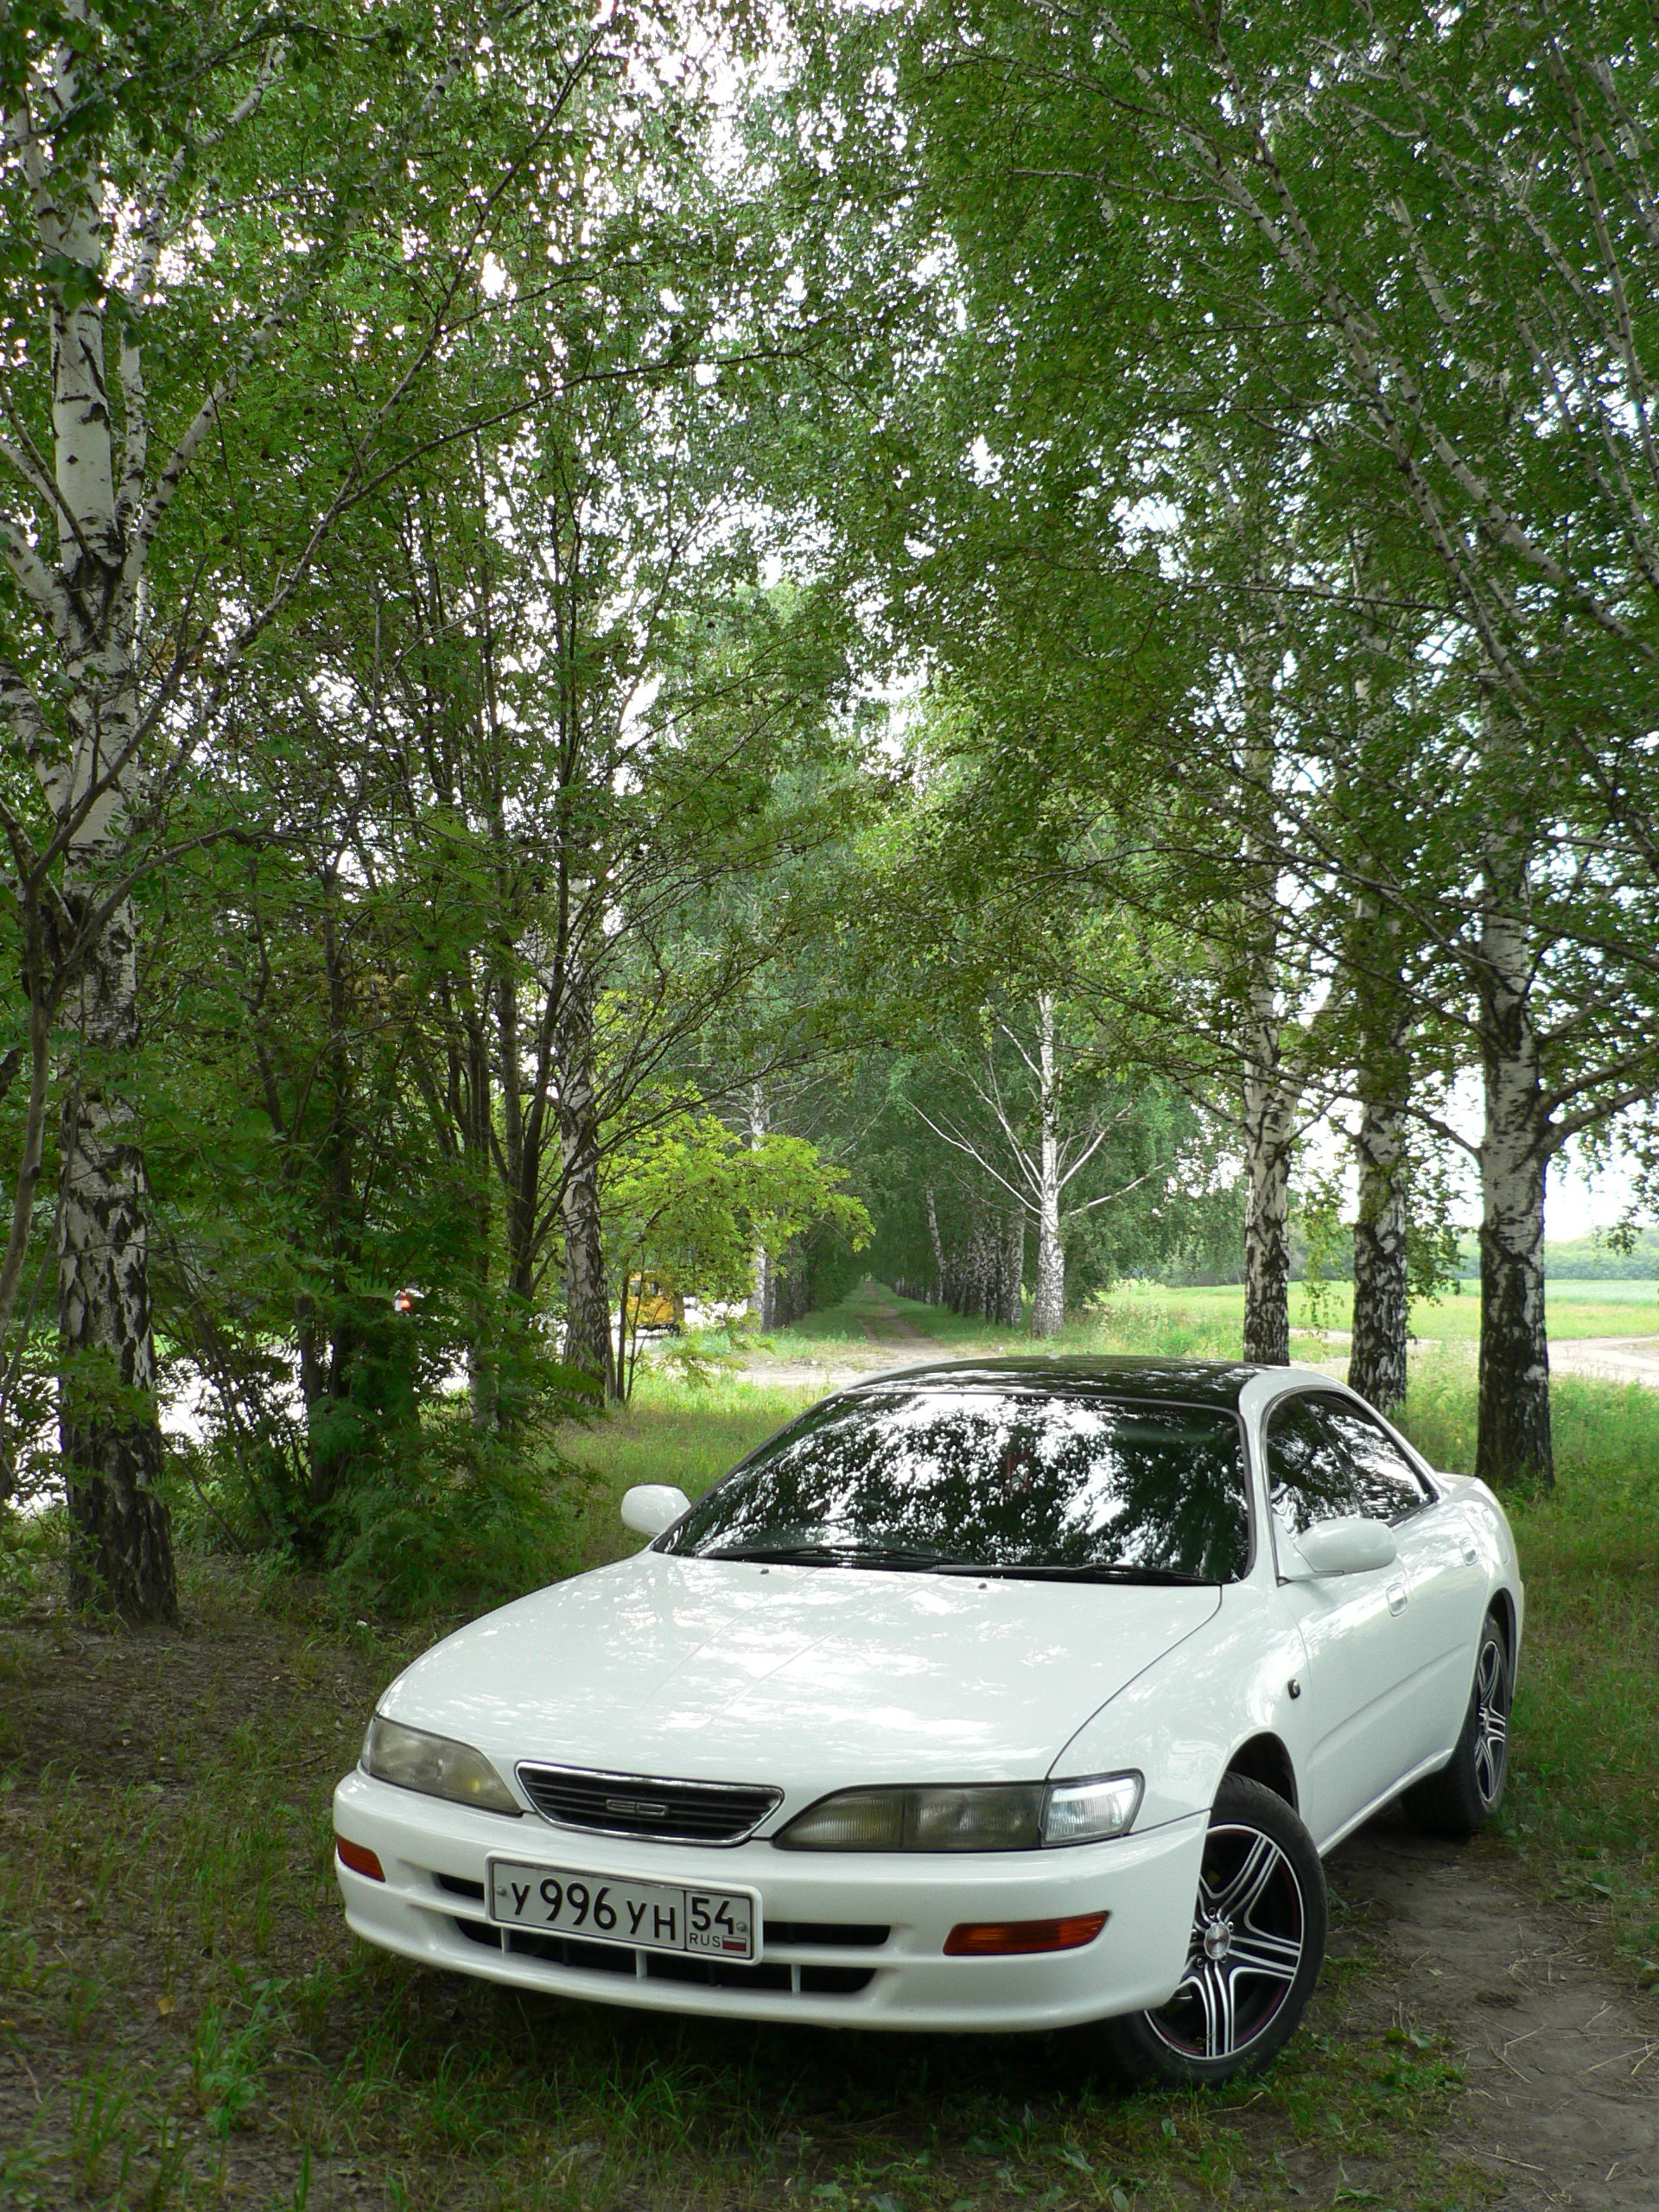    Toyota Carina ED 20 1995 